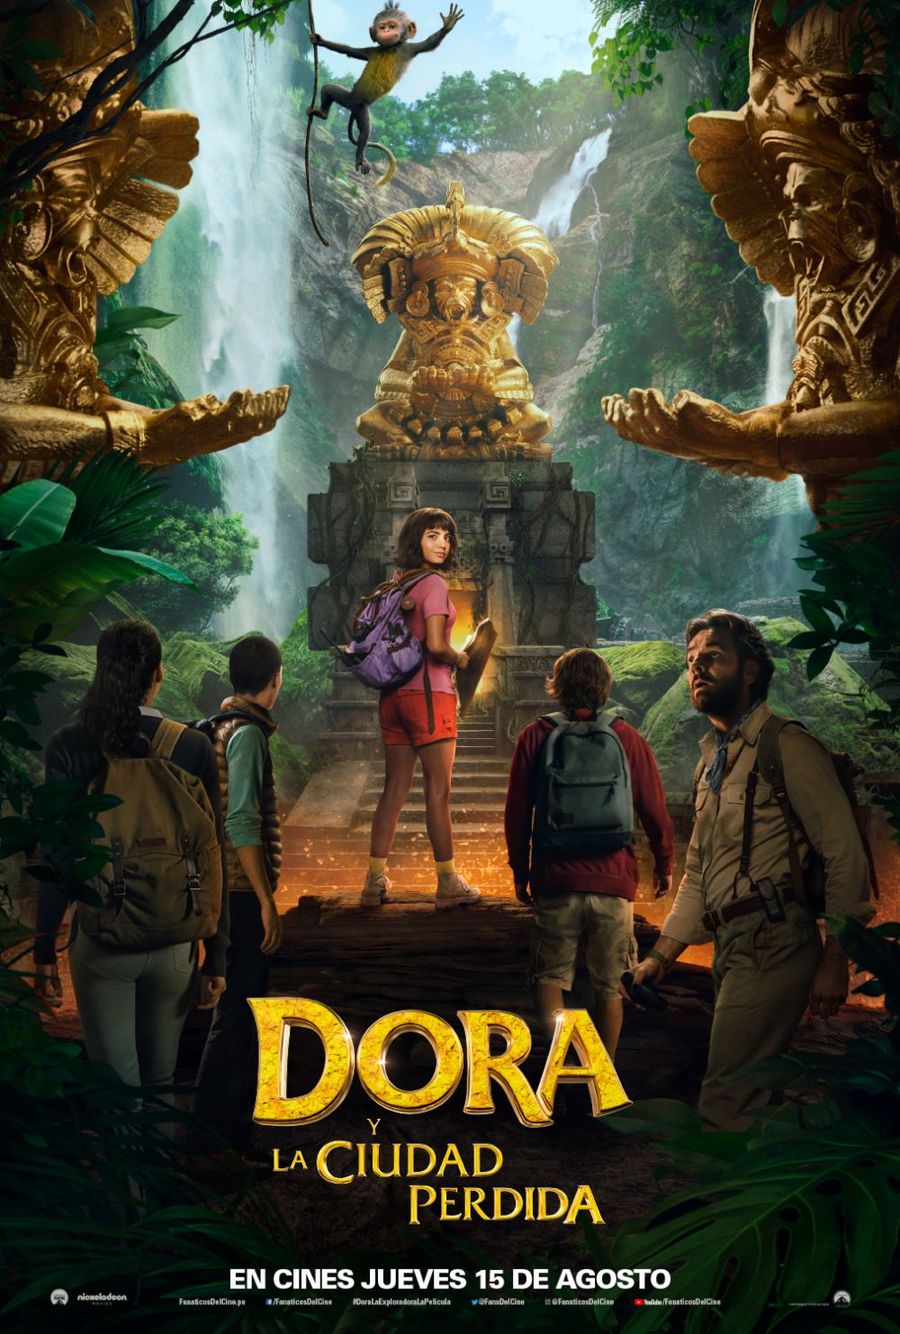 Aventuras. Desvelan el primer póster oficial de la cinta Dora y la ciudad perdida, que llegará a las pantallas de cine en agosto. (ESPECIAL)